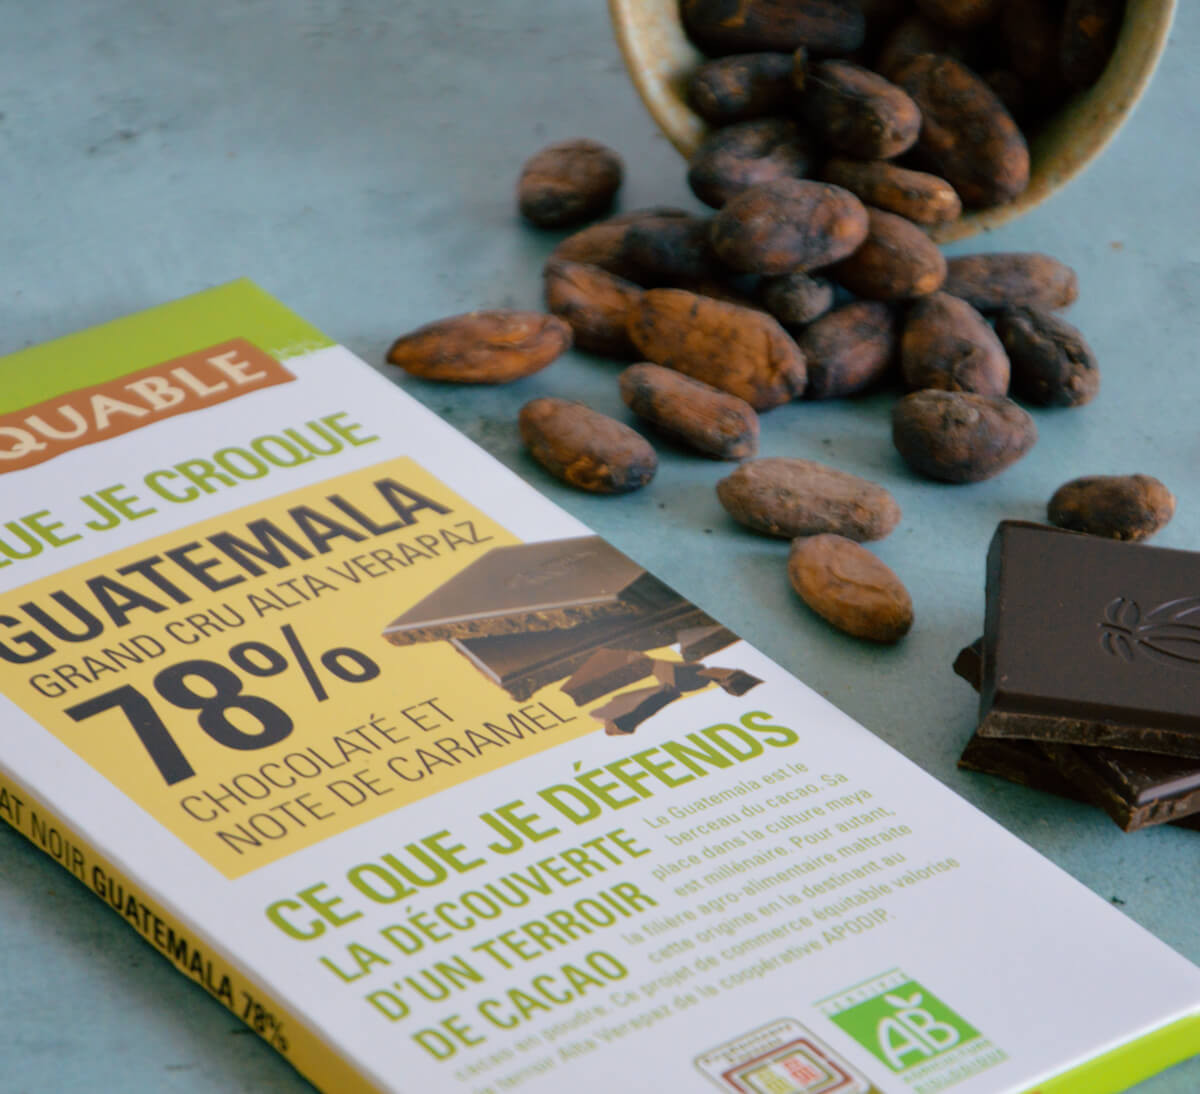 Ethiquable - Chocolat noir 78% de cacao bio du Guatemala issu du Commerce équitable. Tablette fabriquée dans le Gers.